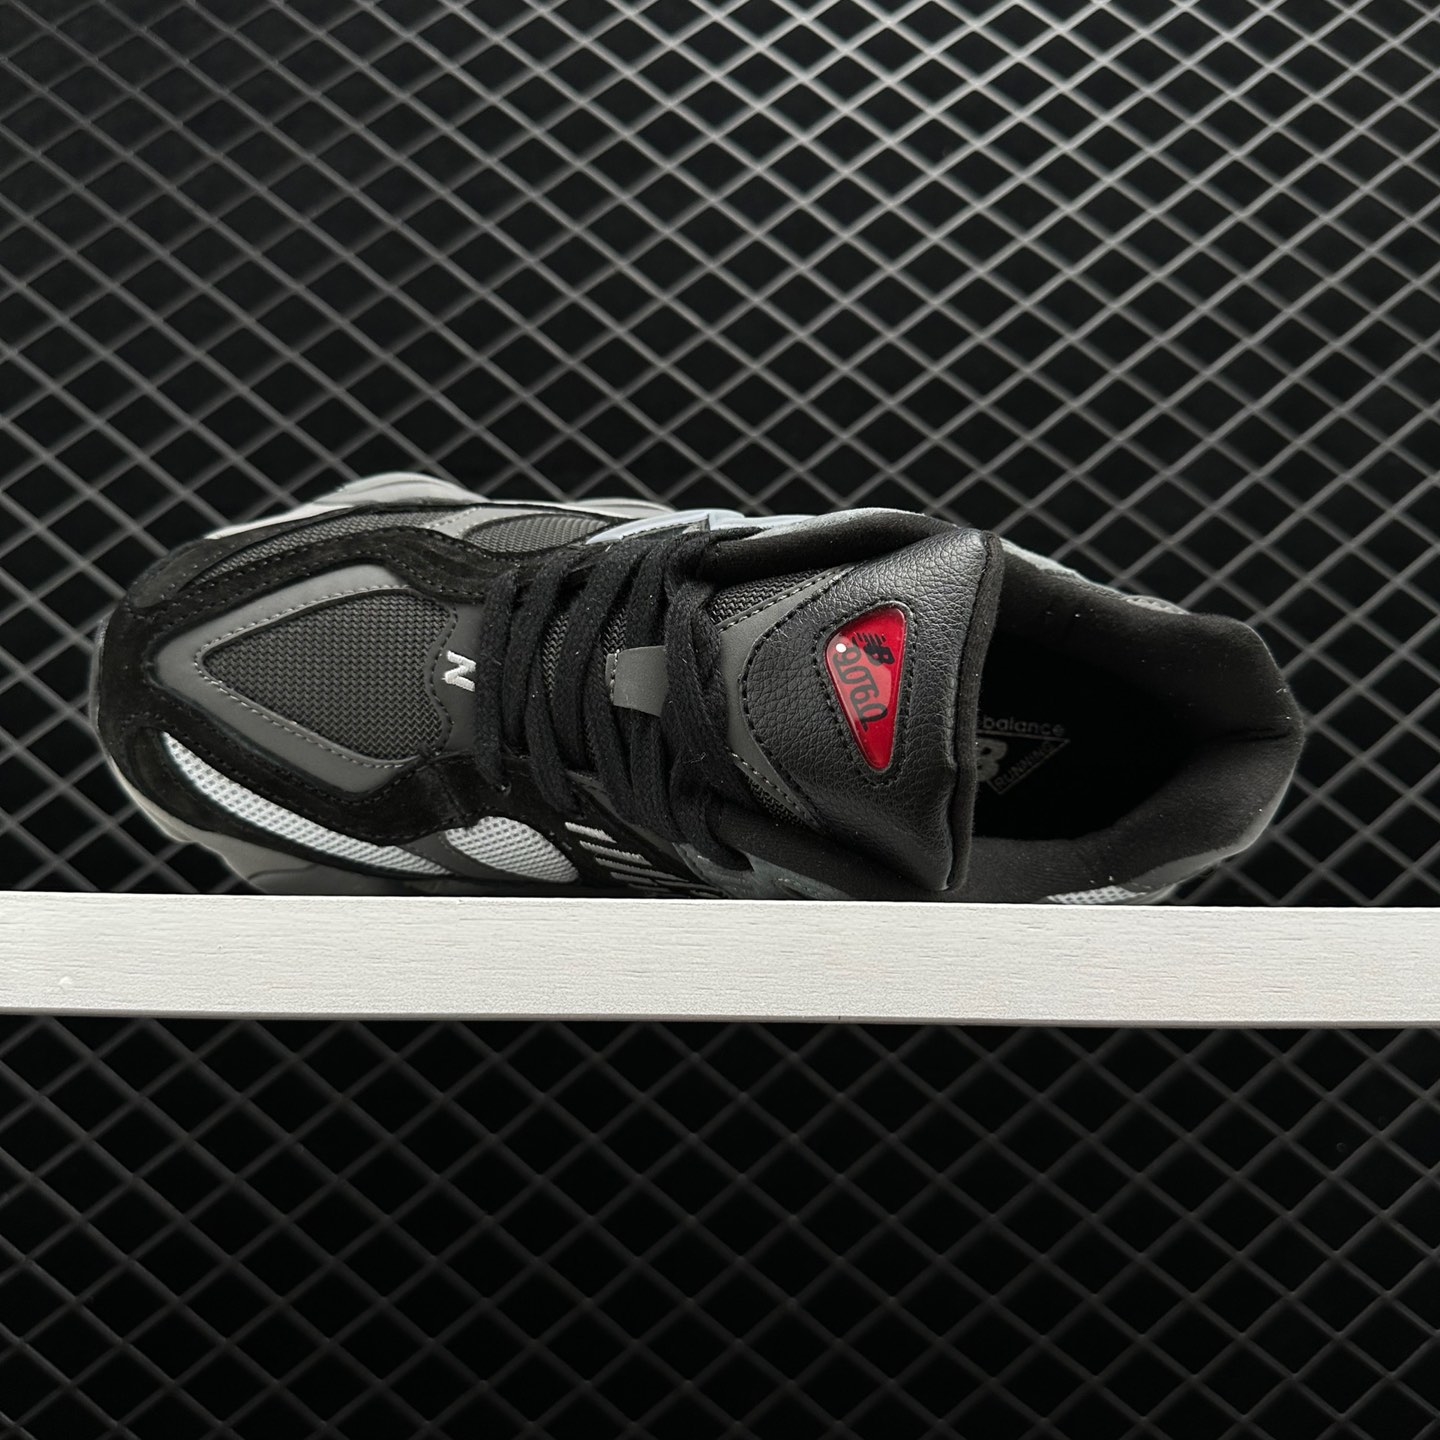 New Balance 9060 'Black Castlerock' U9060BLK - Sleek and Stylish Athletic Shoes